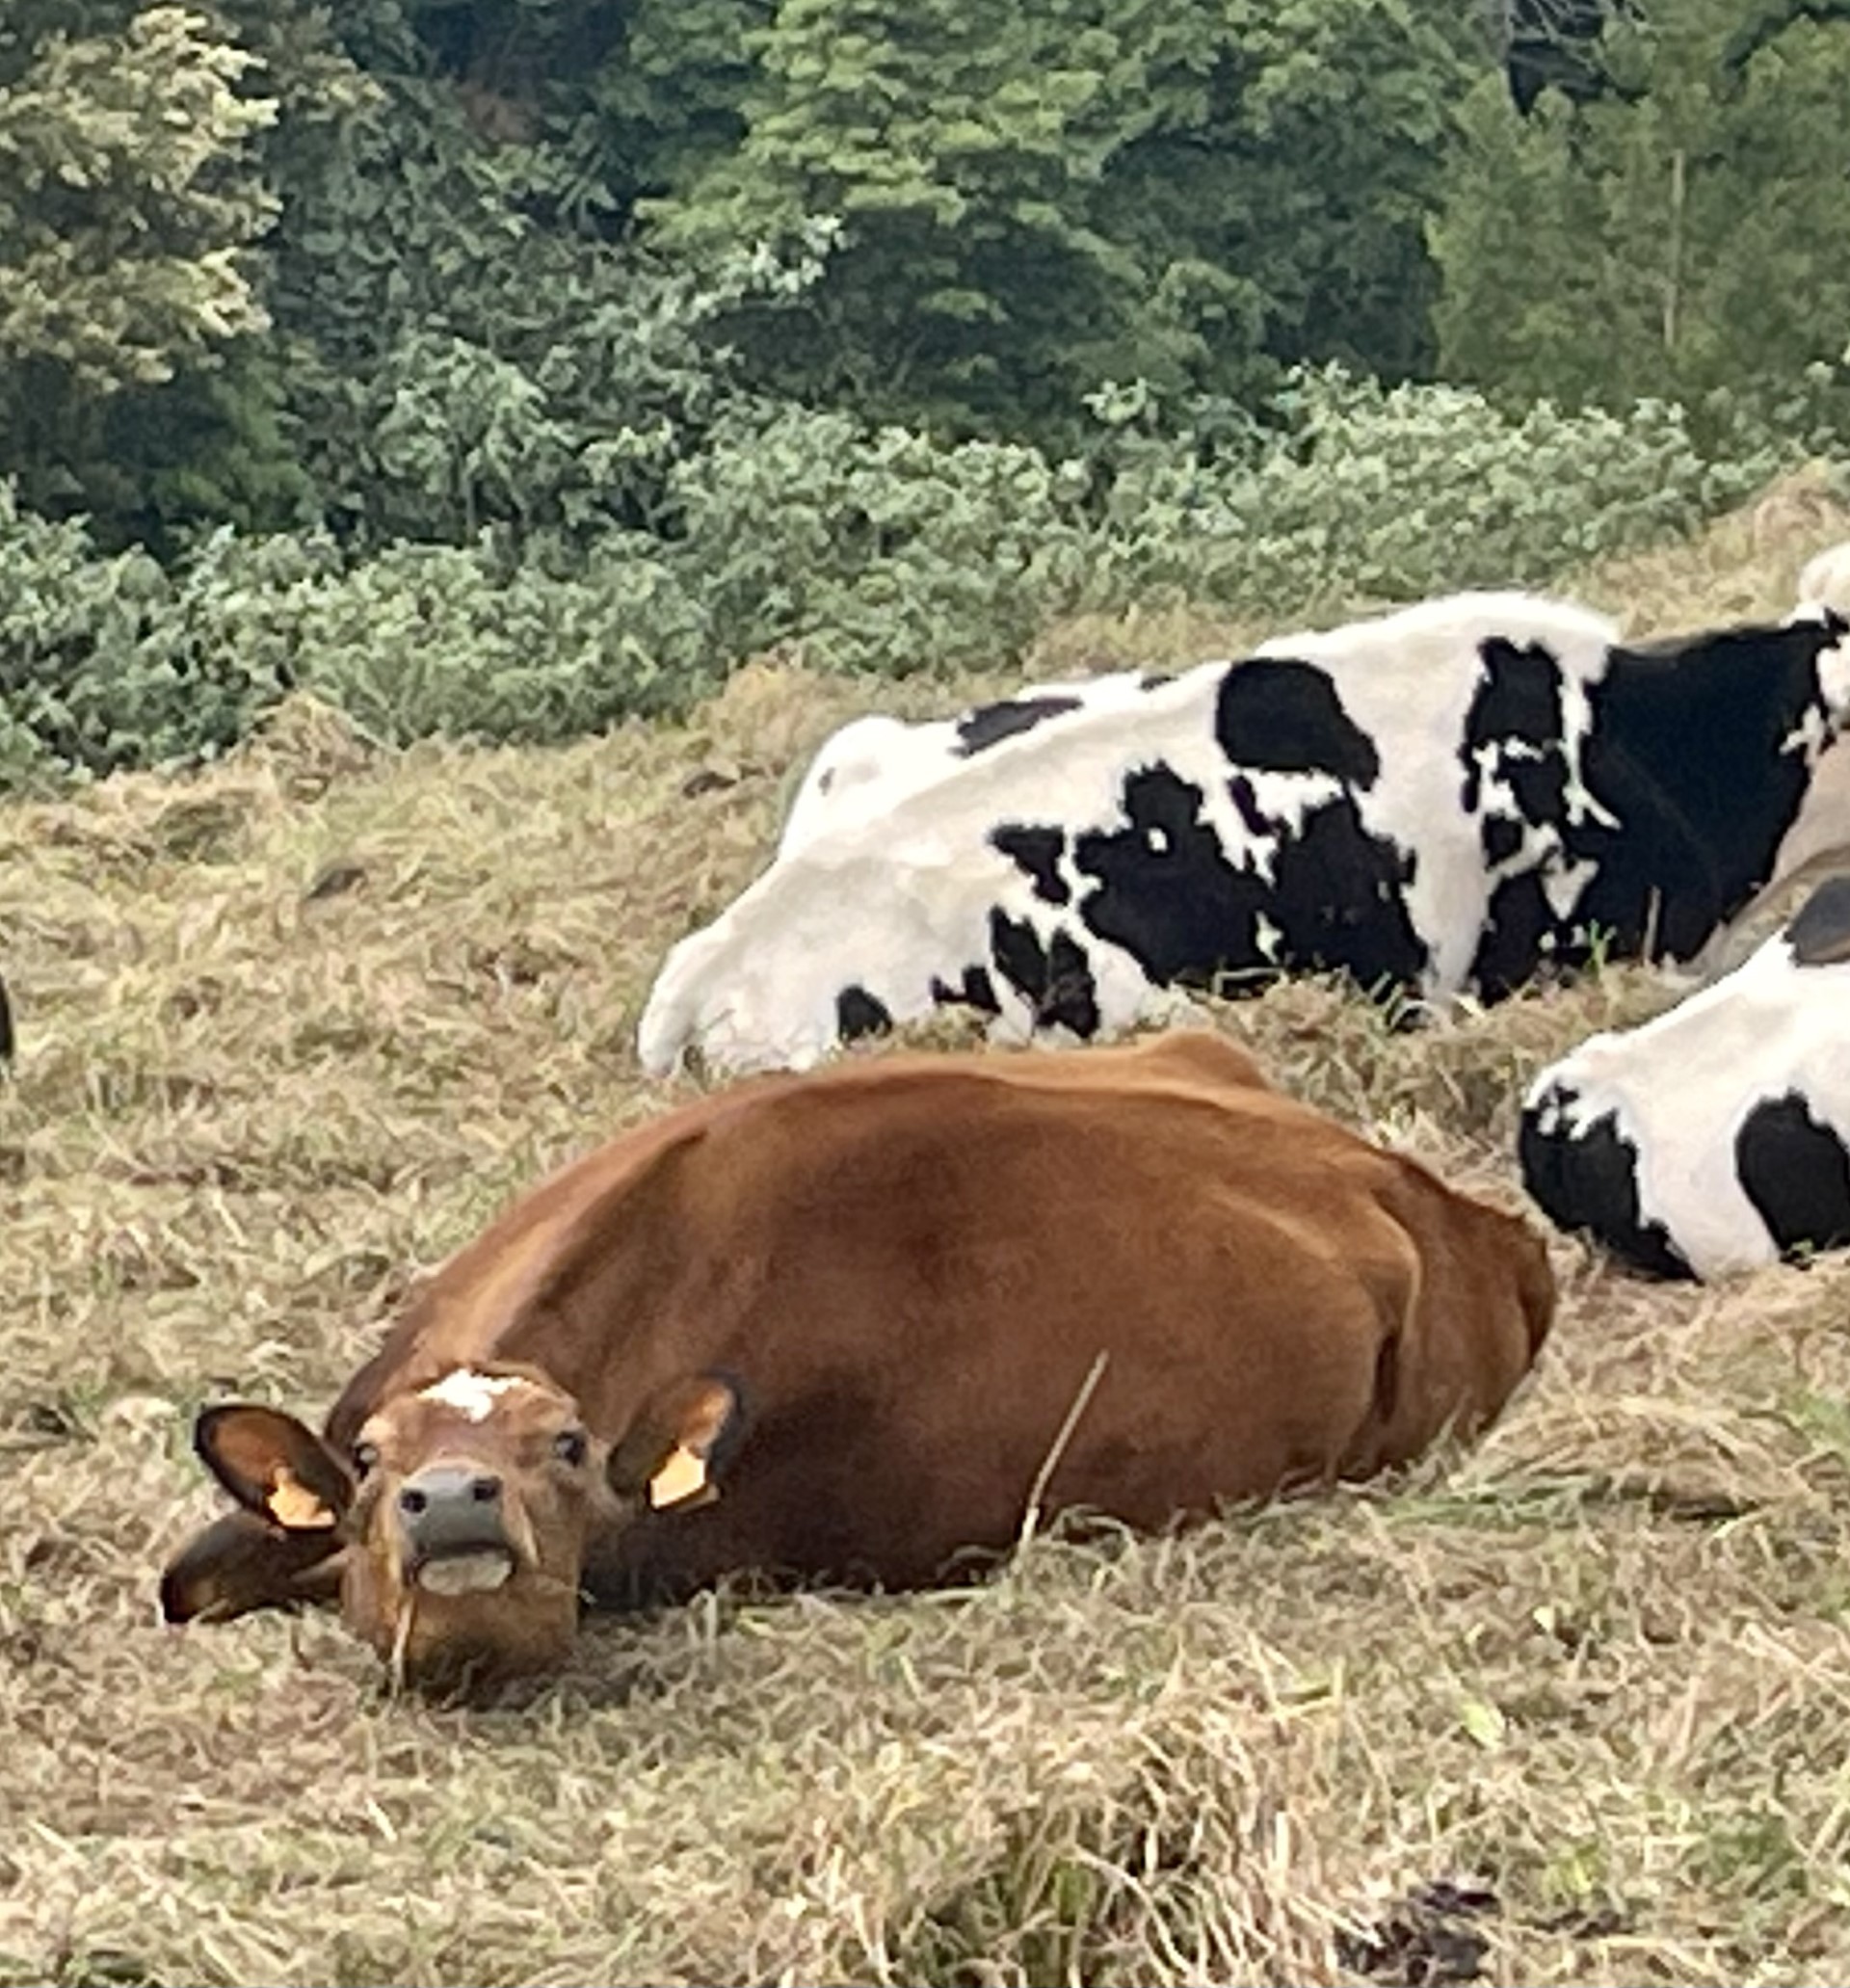 Sao Miguel cows